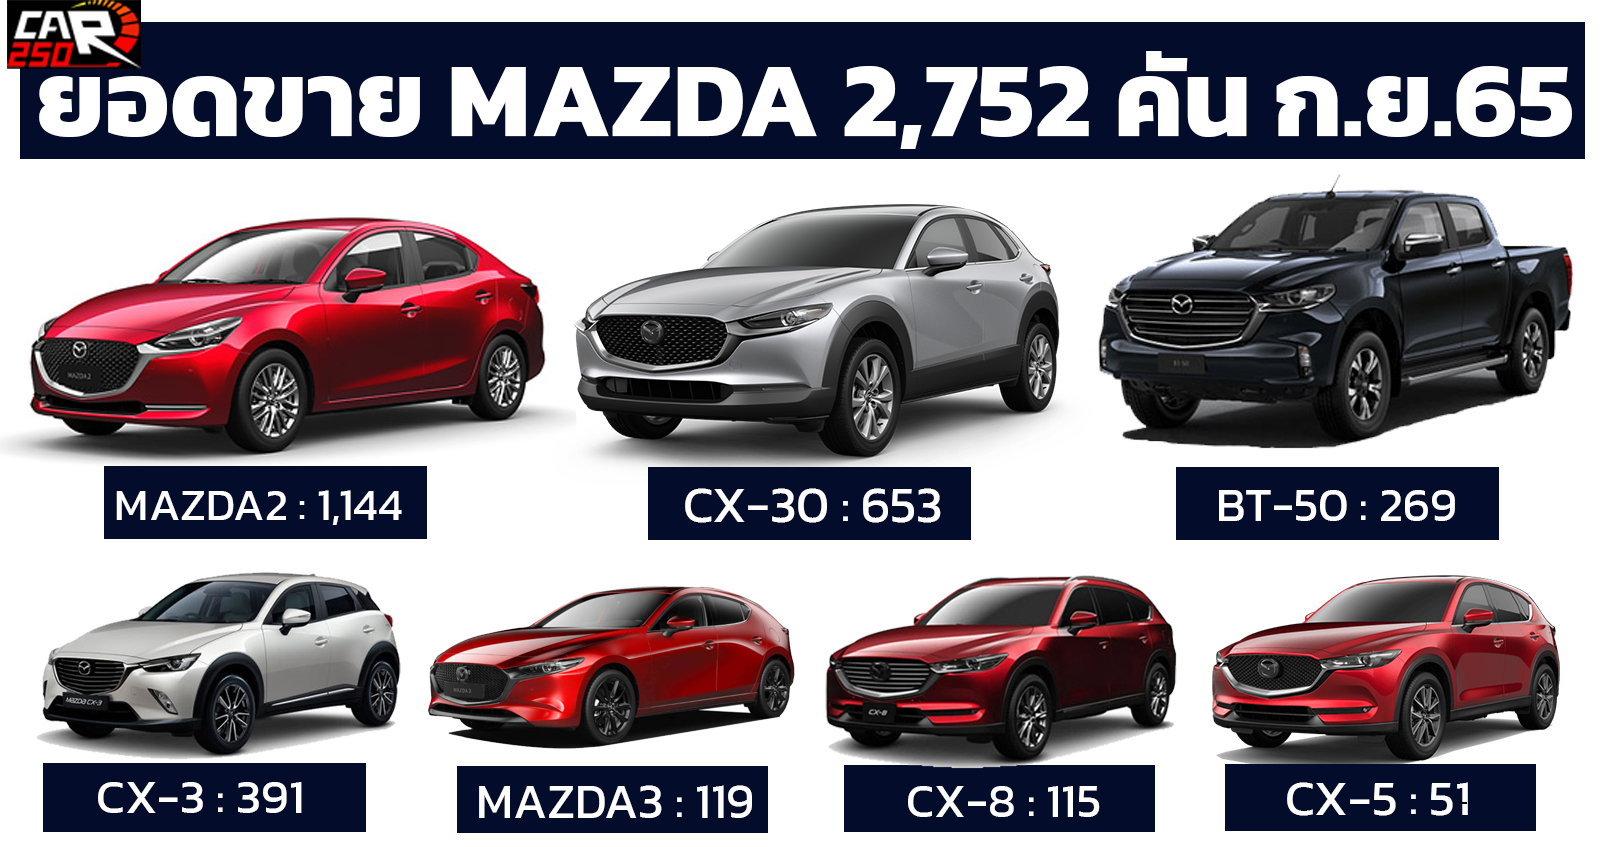 ยอดขาย MAZDA ในไทย กันยายน 2022 รวม 2,752 คัน พร้อมโปรขับฟรี 90 วัน